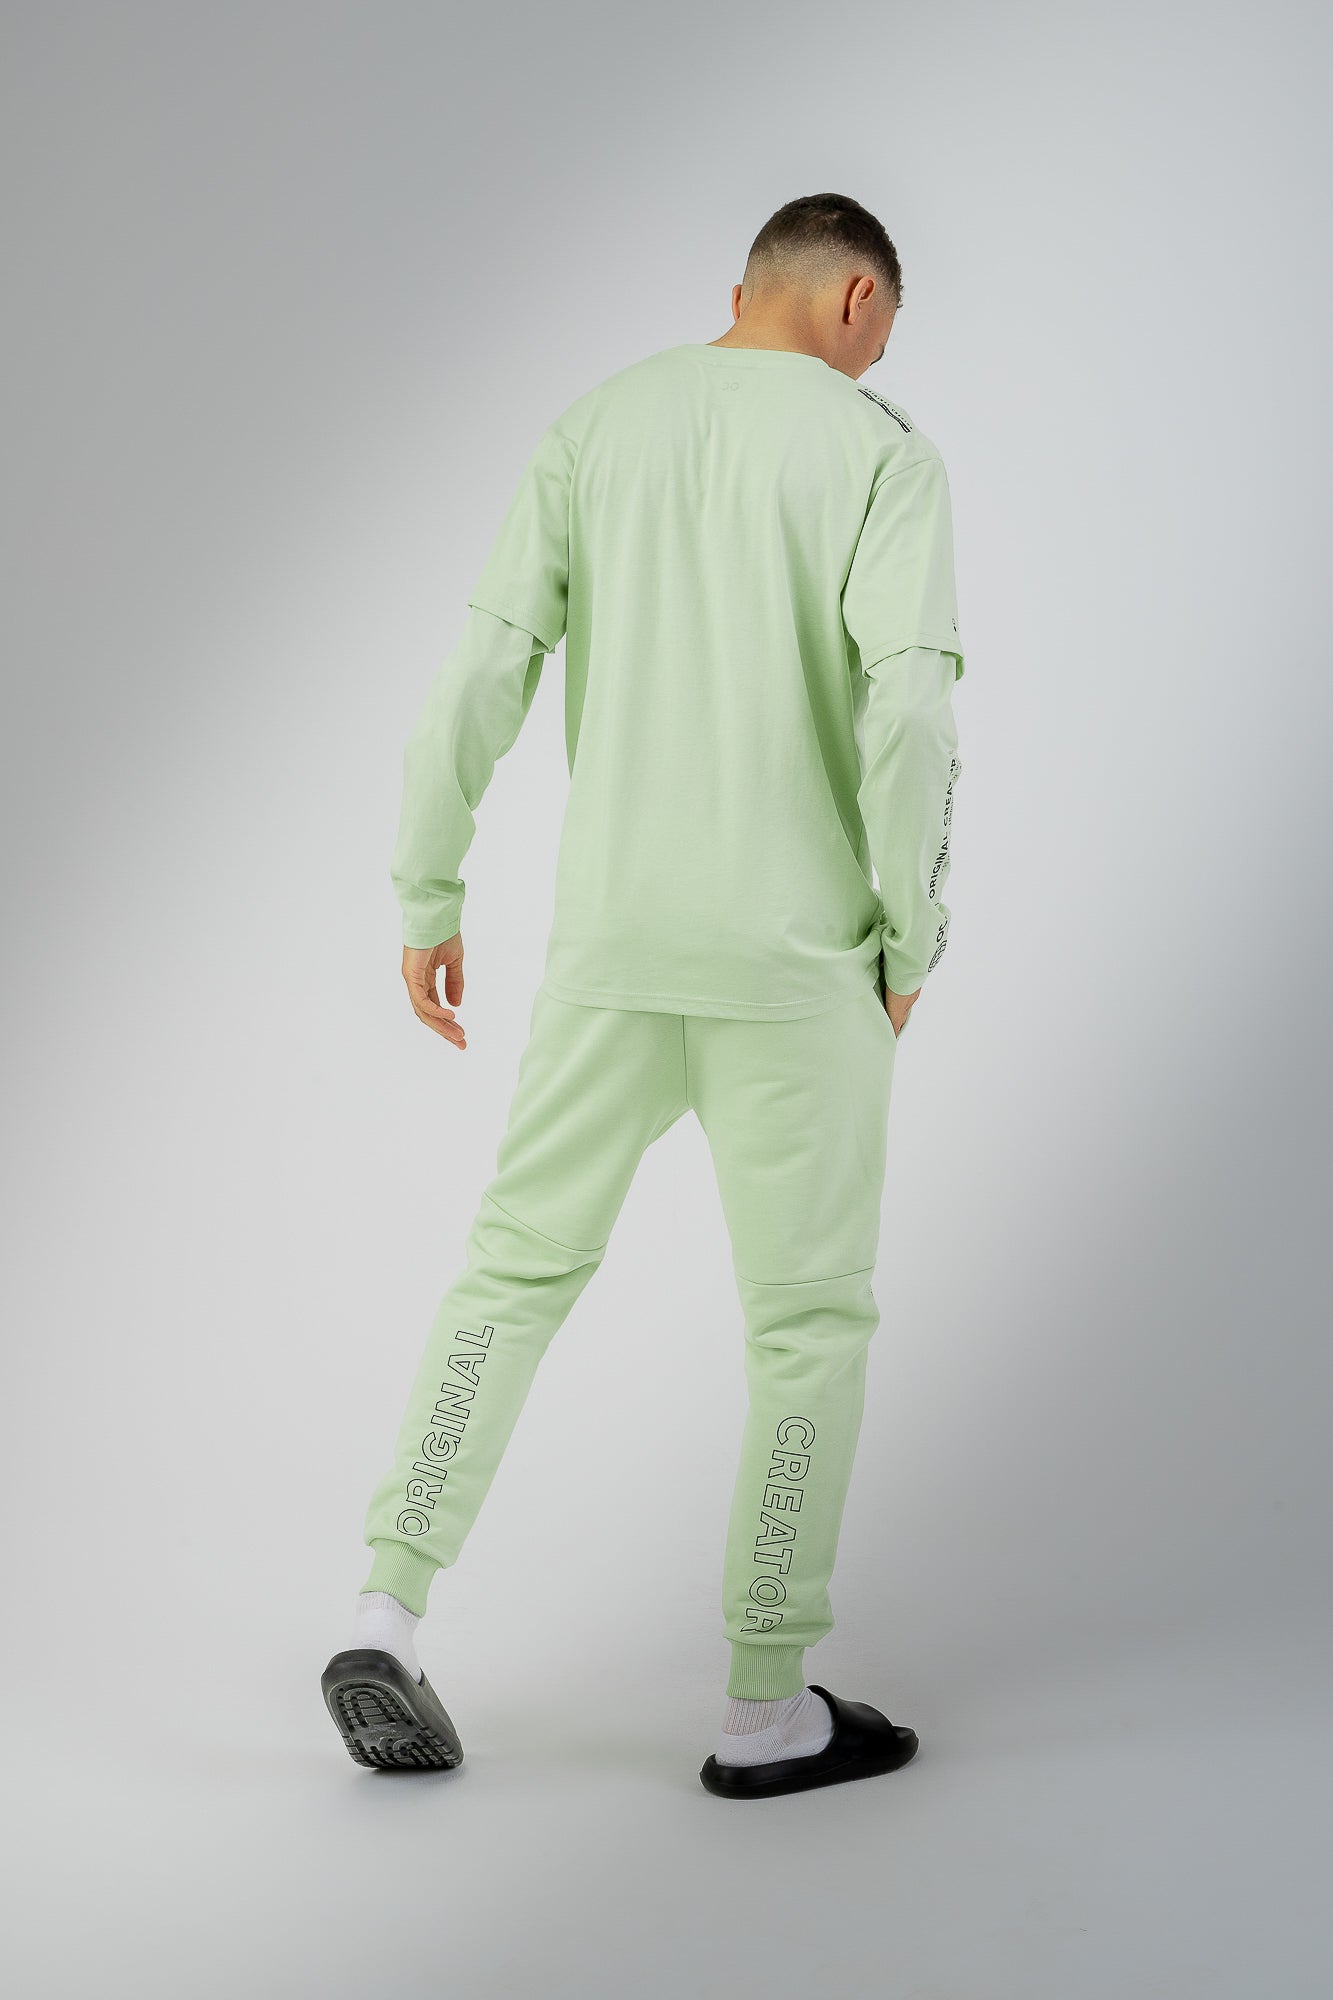 Error Circuit Layered Sleeve T-Shirt - Peppermint Green